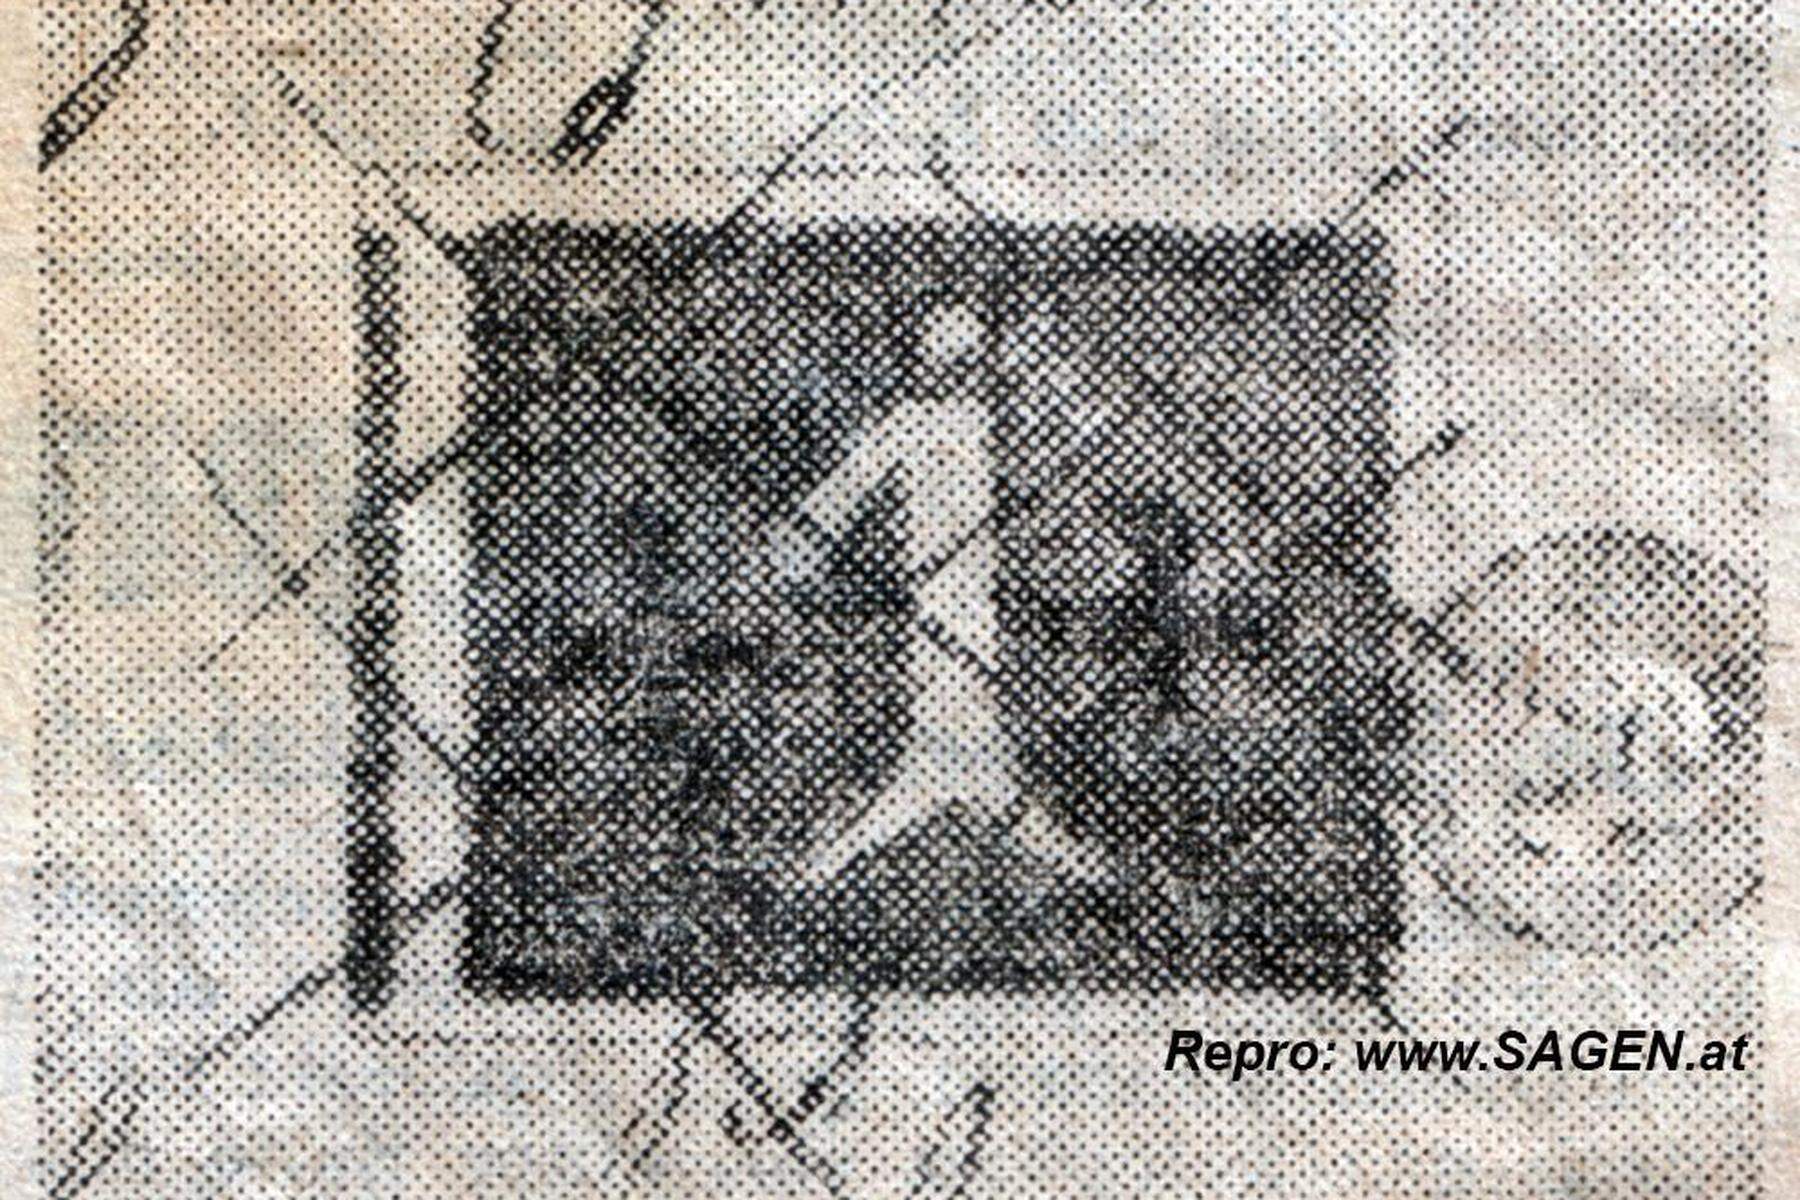 Vor 185 Jahren: Inoffizieller Schöpfer der Briefmarke kam aus Kärnten